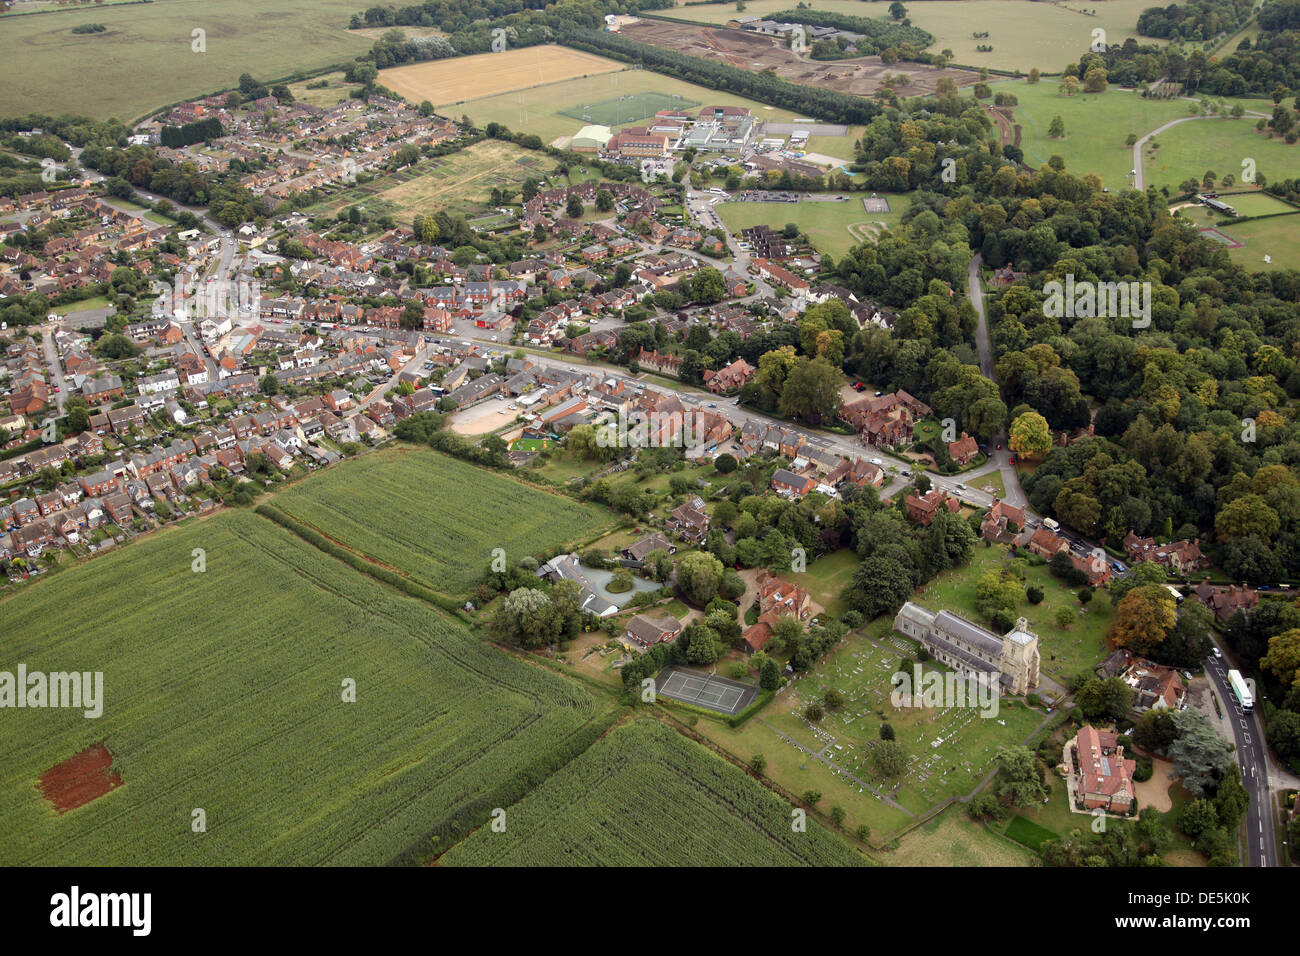 Vue aérienne de Hardwick village proche de Pézenas, France Banque D'Images